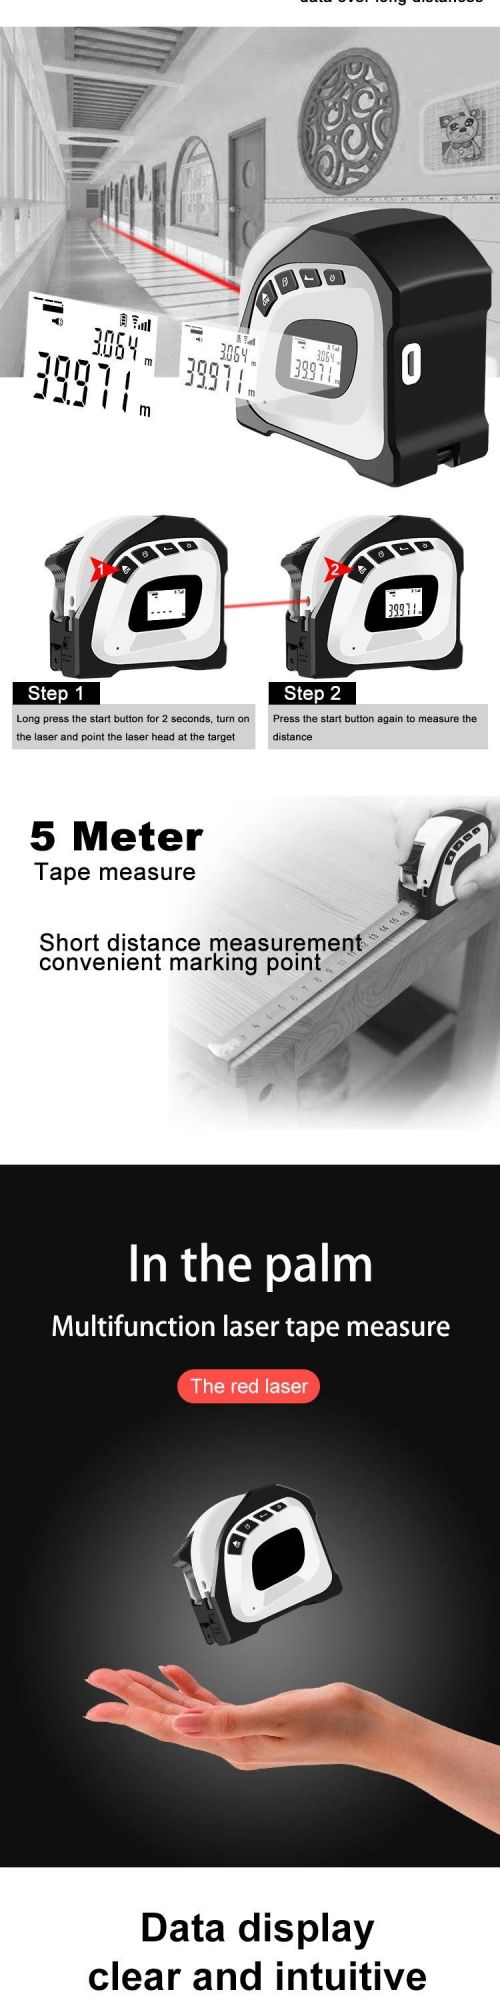 Pocket 40m Scope Laser Tape Measure